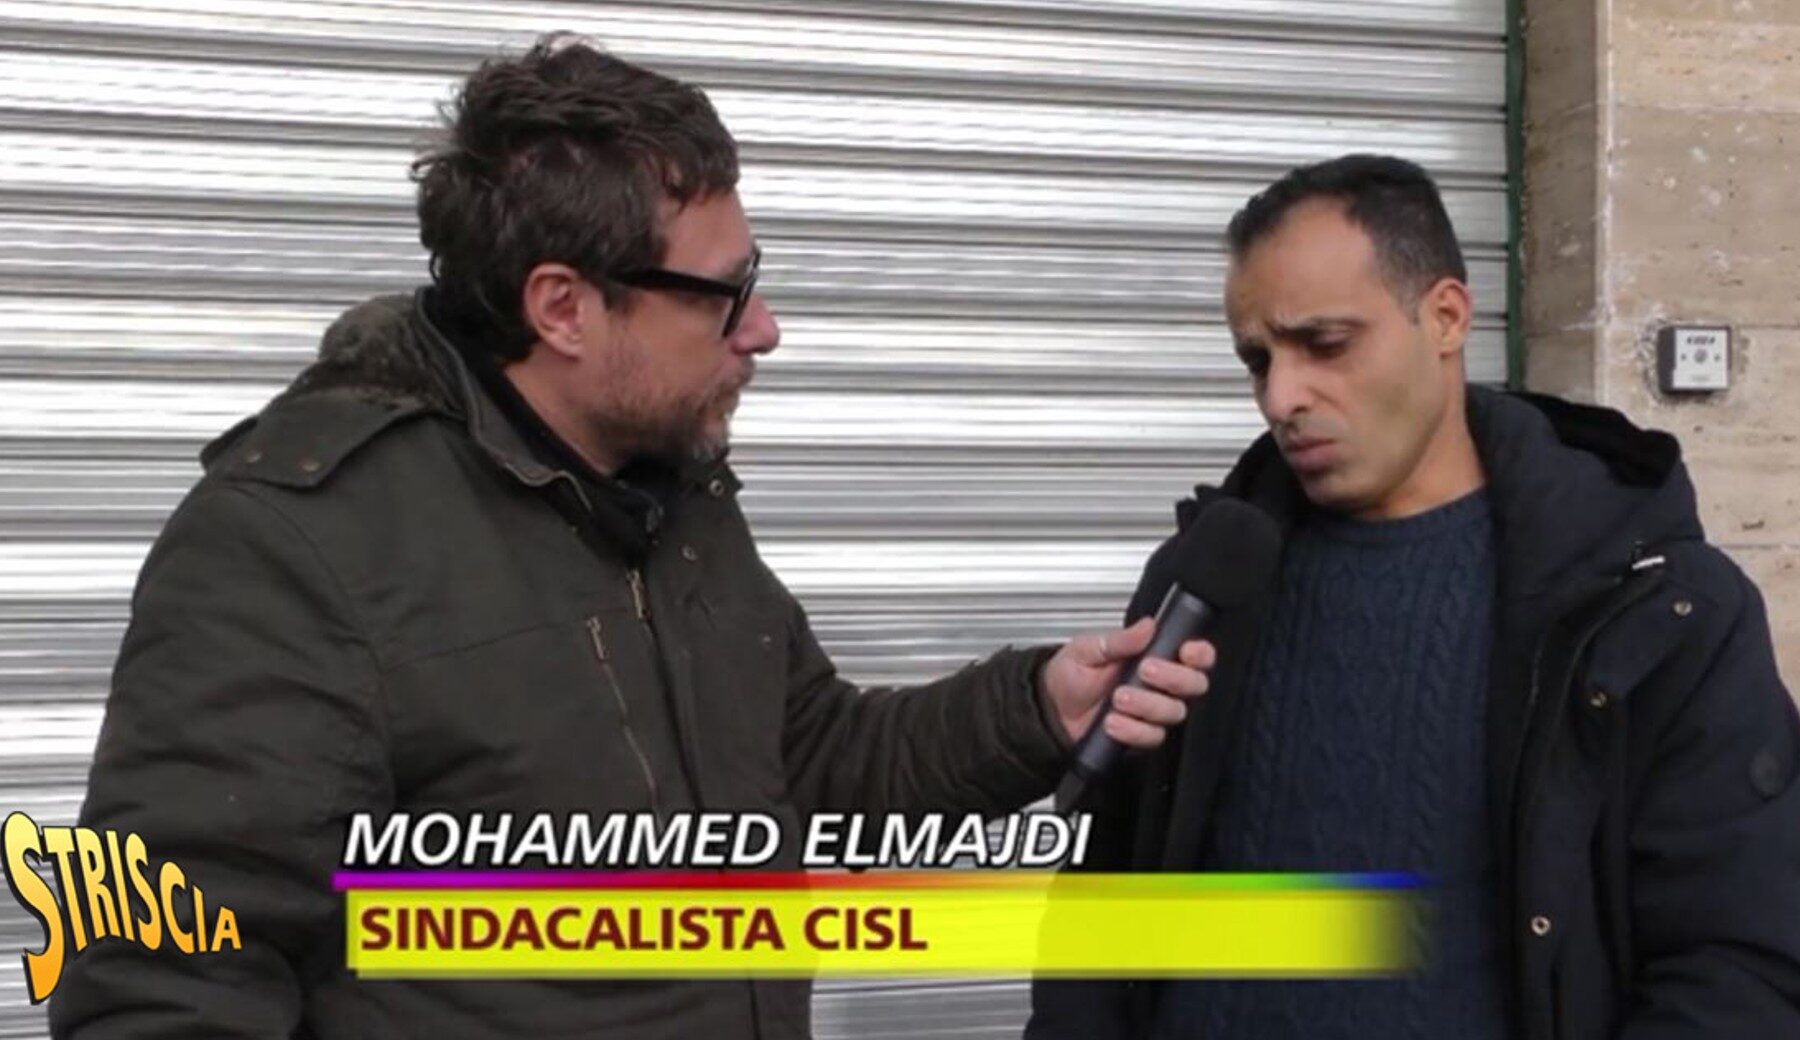 Anteprima Striscia: intervista esclusiva a Mohamed Elmajdi, sindacalista picchiato dagli uomini della Lega Braccianti di Soumahoro